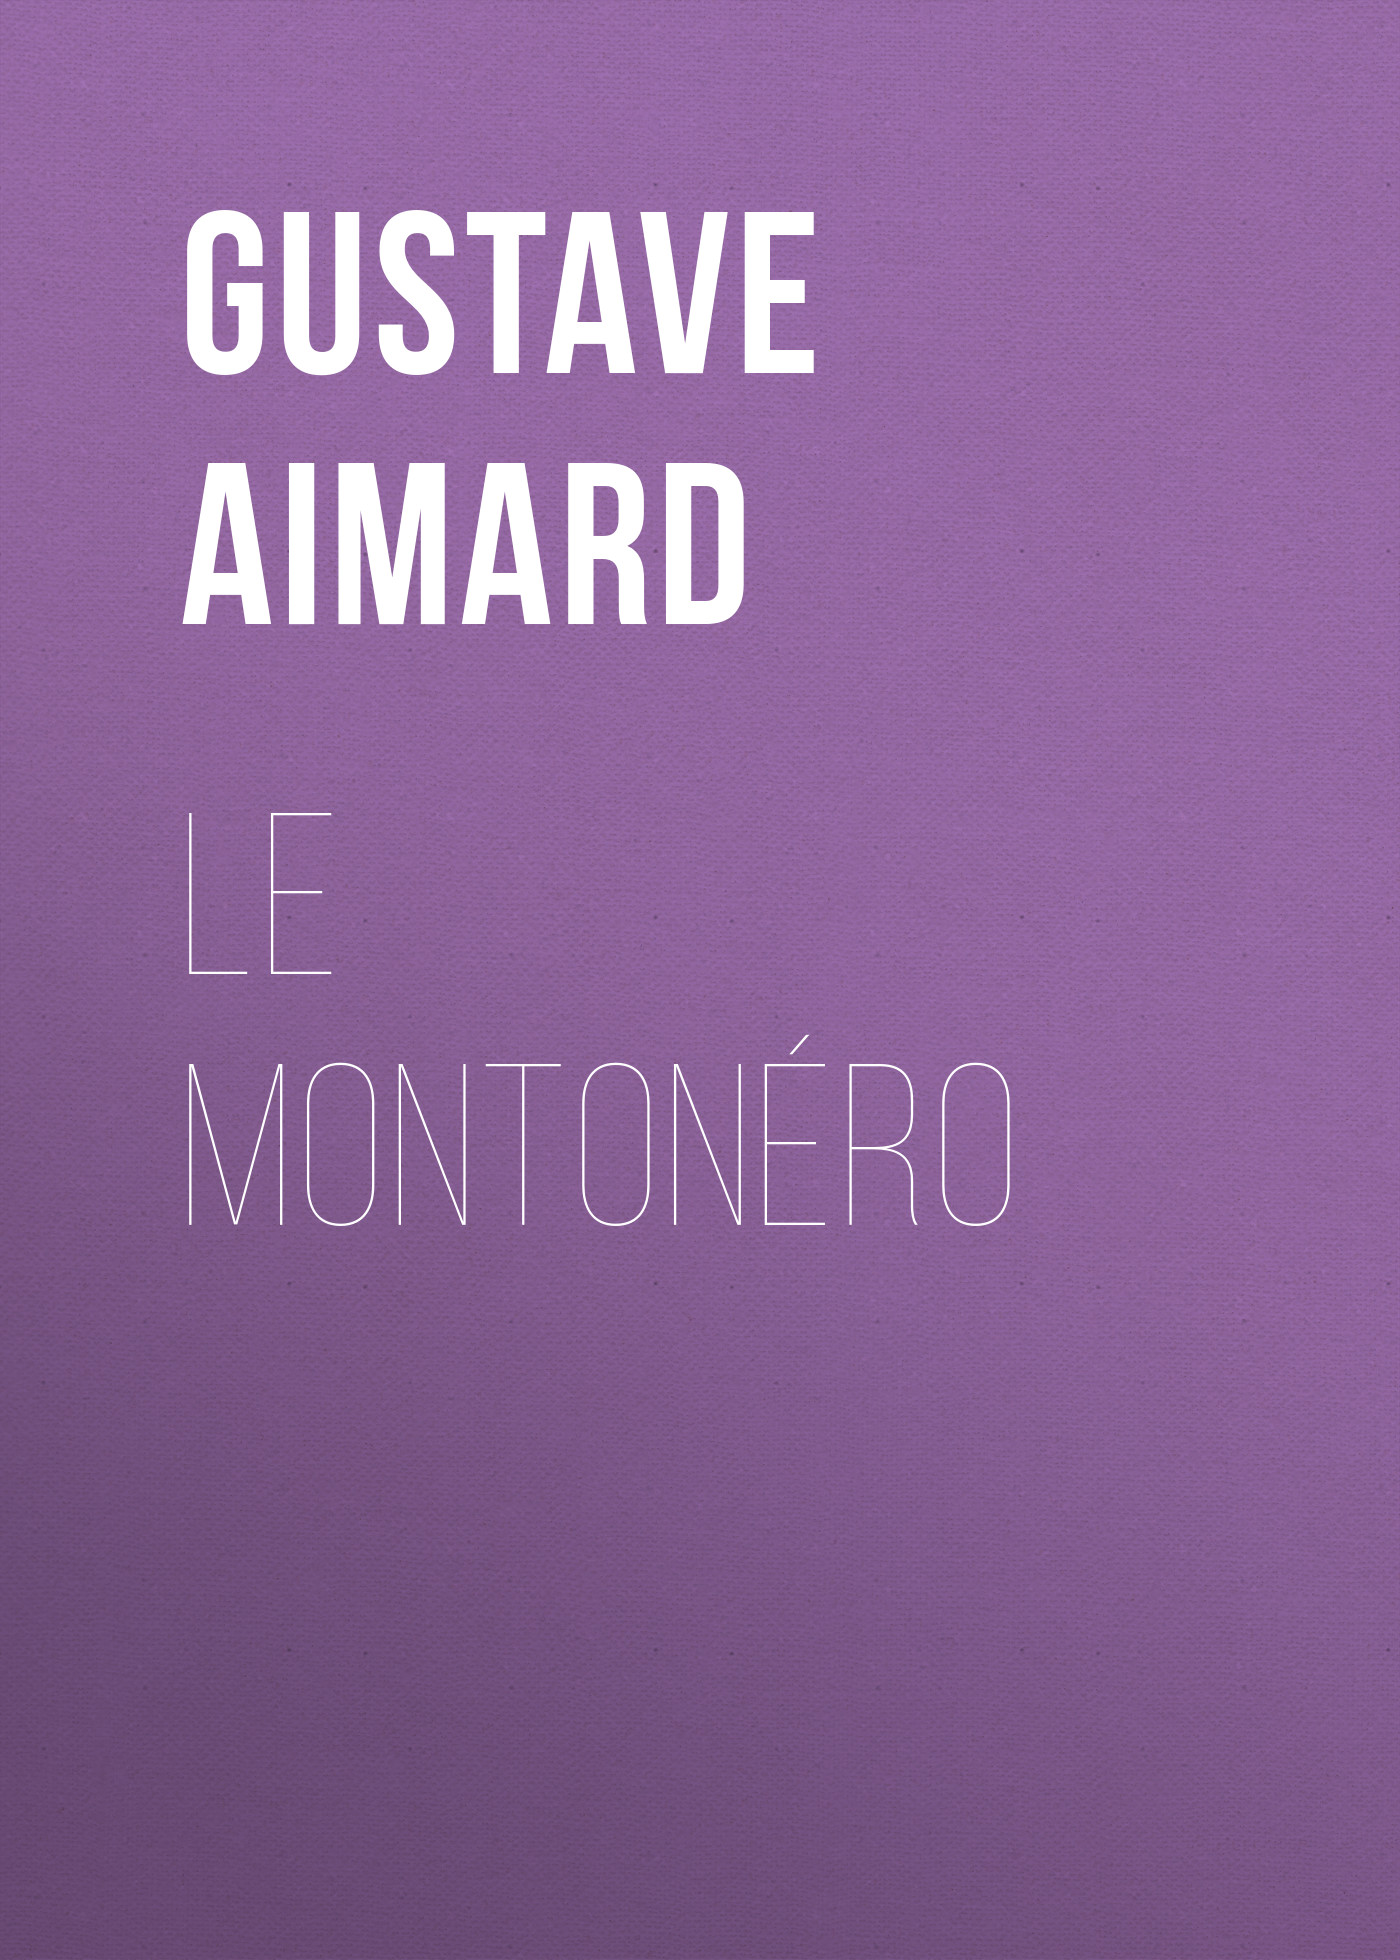 Книга Le Montonéro из серии , созданная Gustave Aimard, может относится к жанру Зарубежная старинная литература, Зарубежная классика. Стоимость электронной книги Le Montonéro с идентификатором 24175308 составляет 5.99 руб.